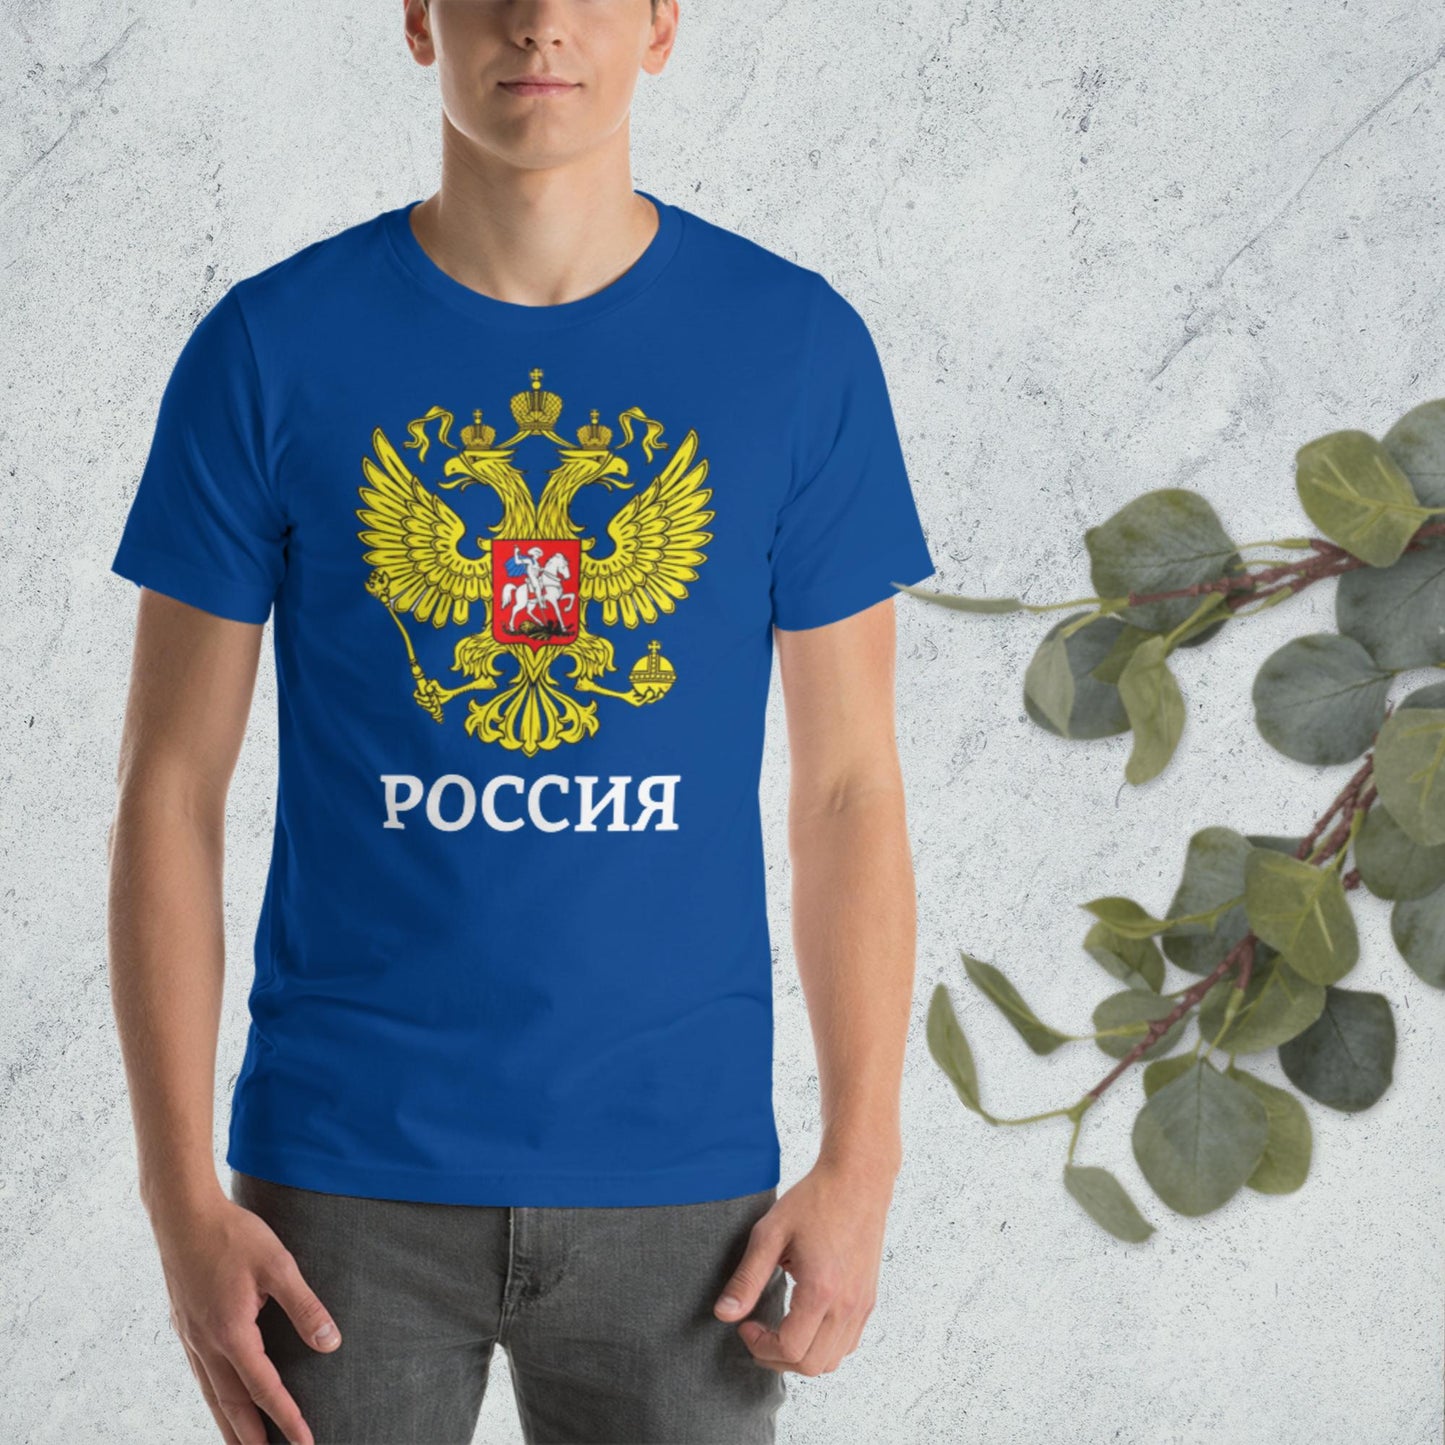 Russland Basic T-Shirt mit weiteren verschiedenen Farben zur Auswahl